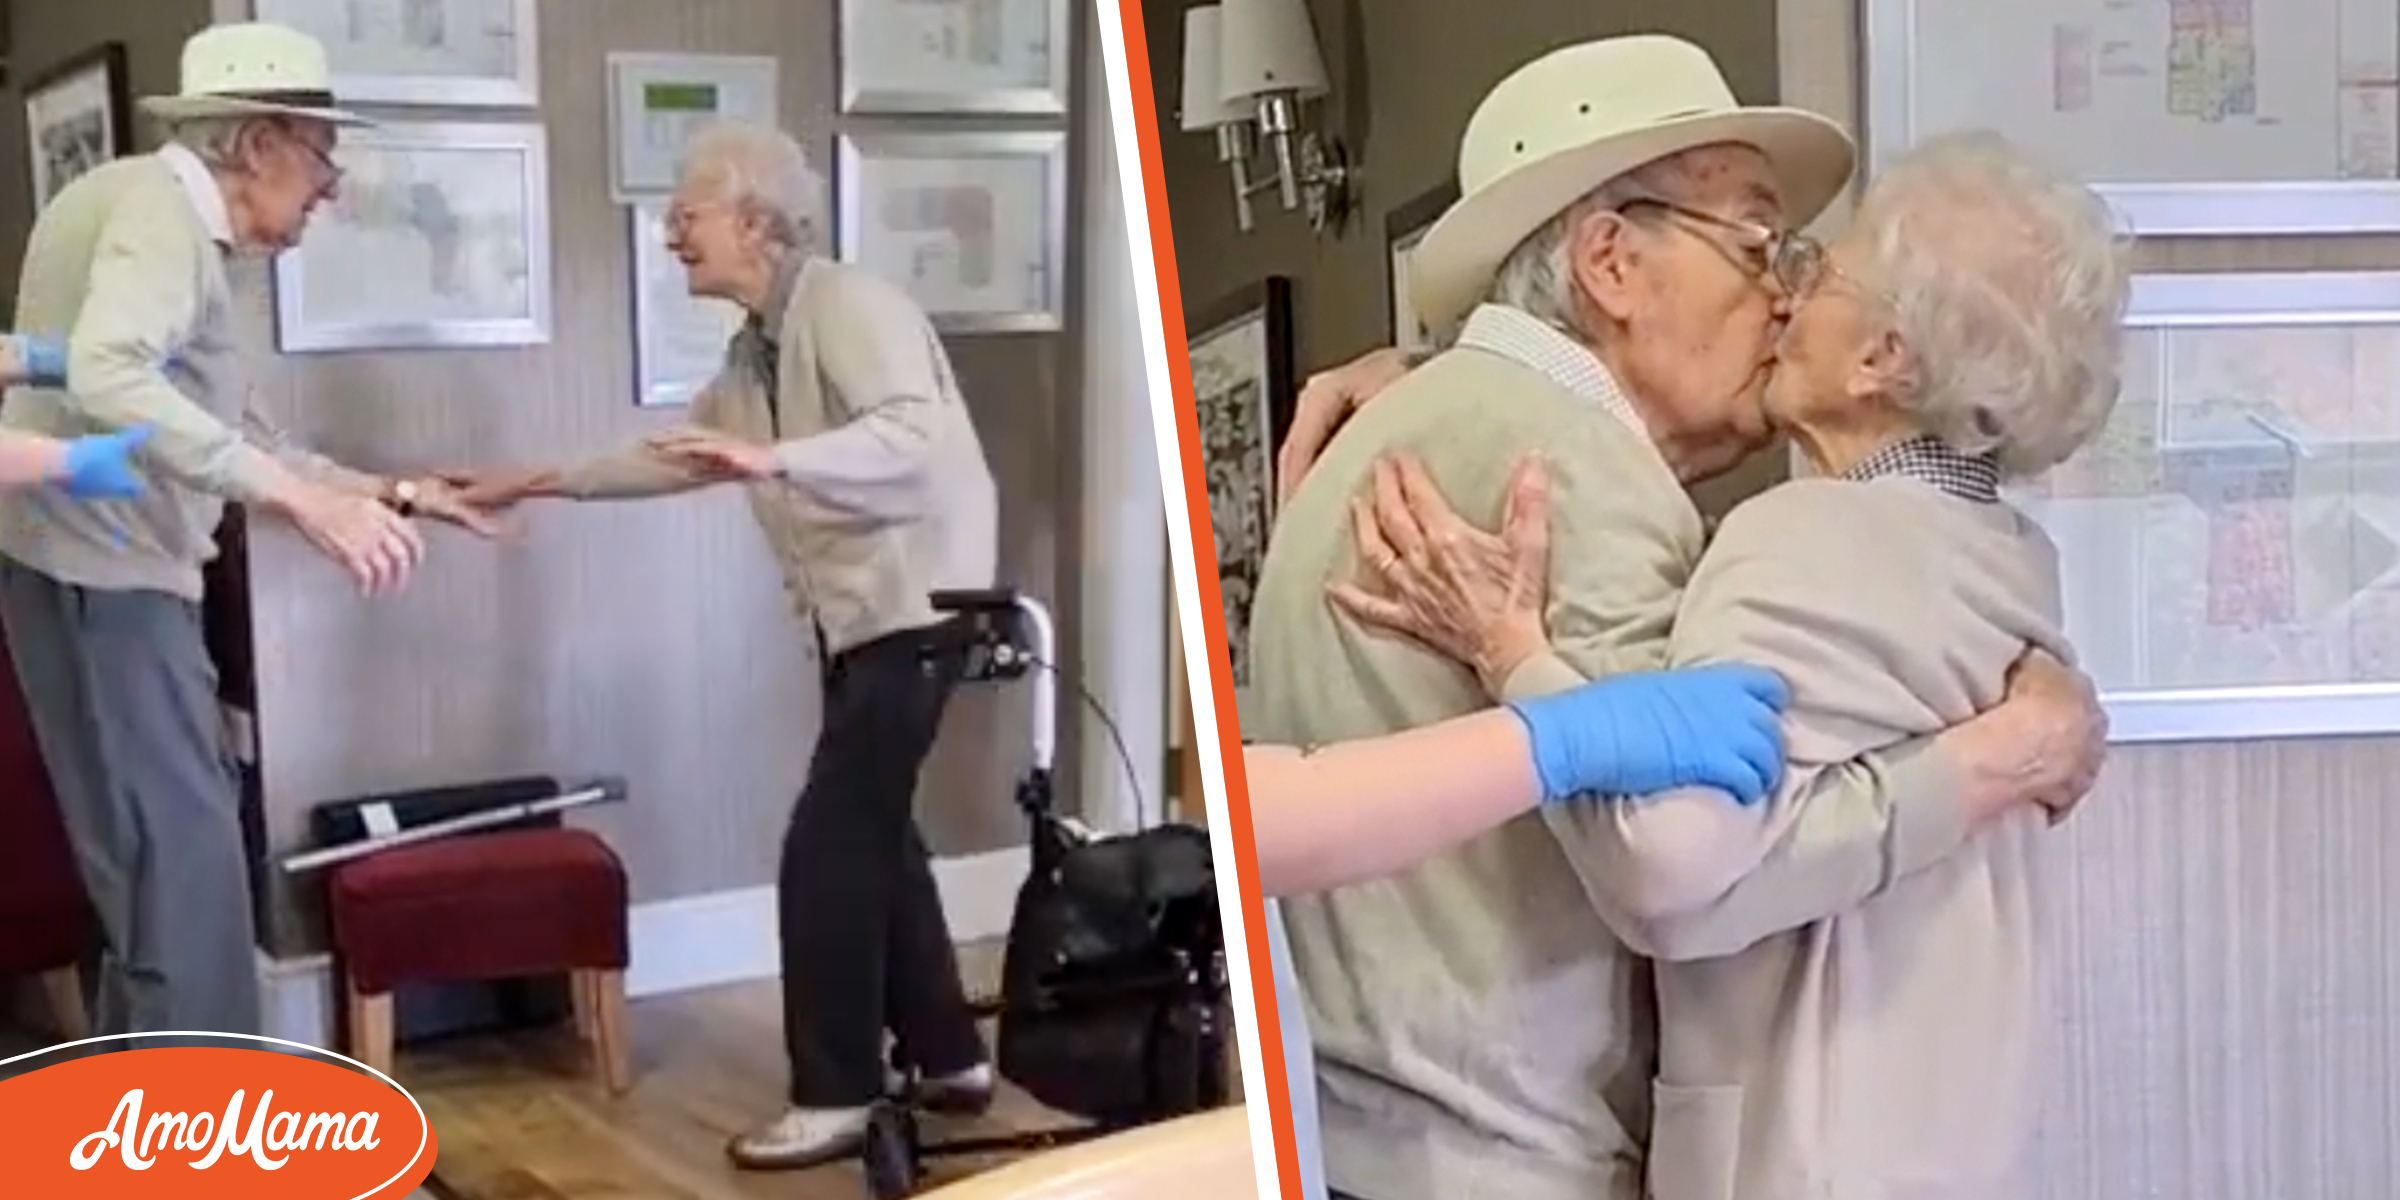 Un mari fait la surprise à sa femme en s’installant dans sa maison de retraite et l’embrasse enfin après des mois de séparation